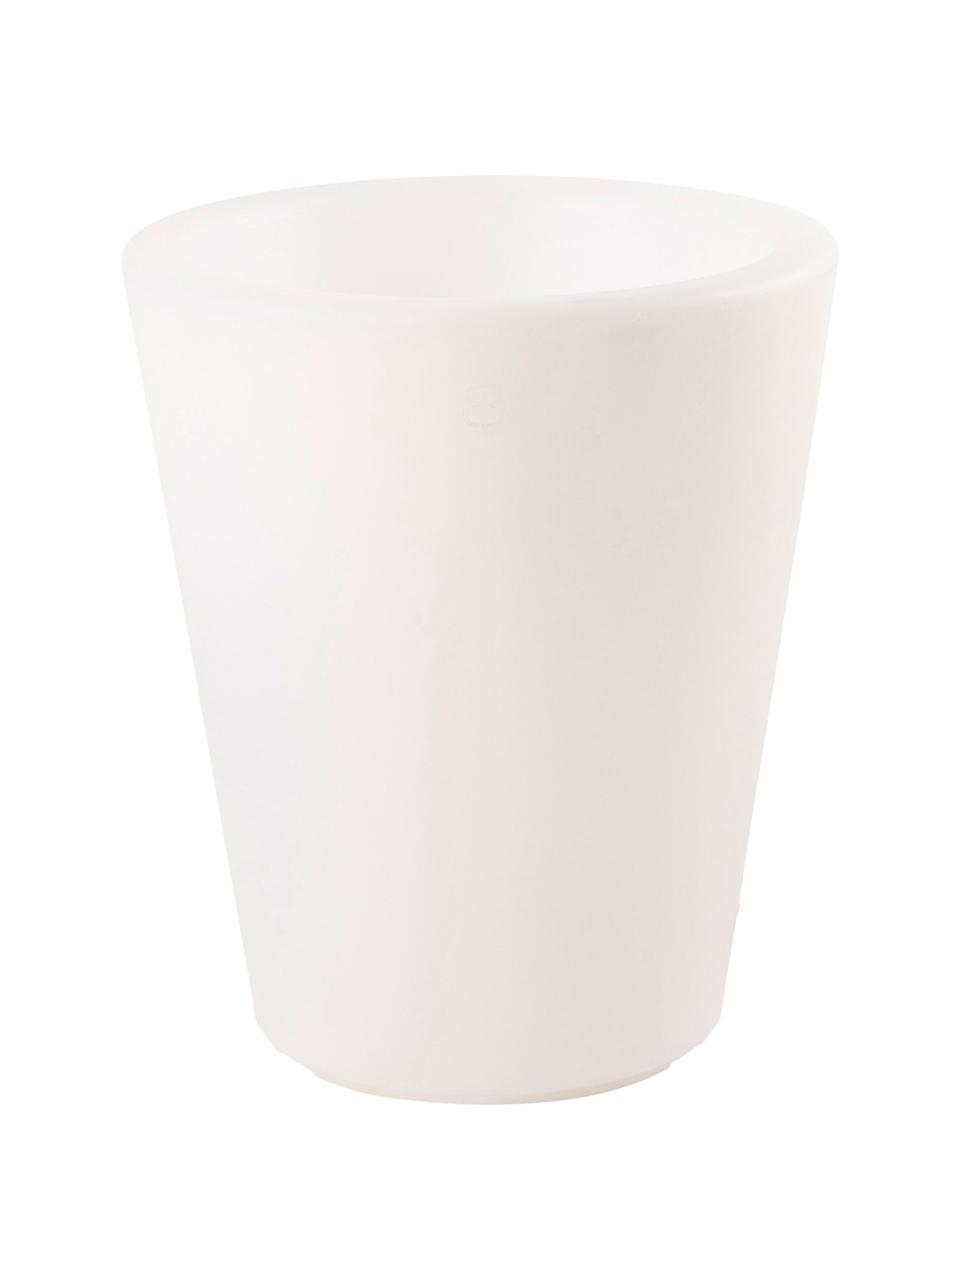 Bodenleuchte Shining Pot mit Stecker, Leuchte: Kunststoff, Weiß, Ø 34 x H 39 cm